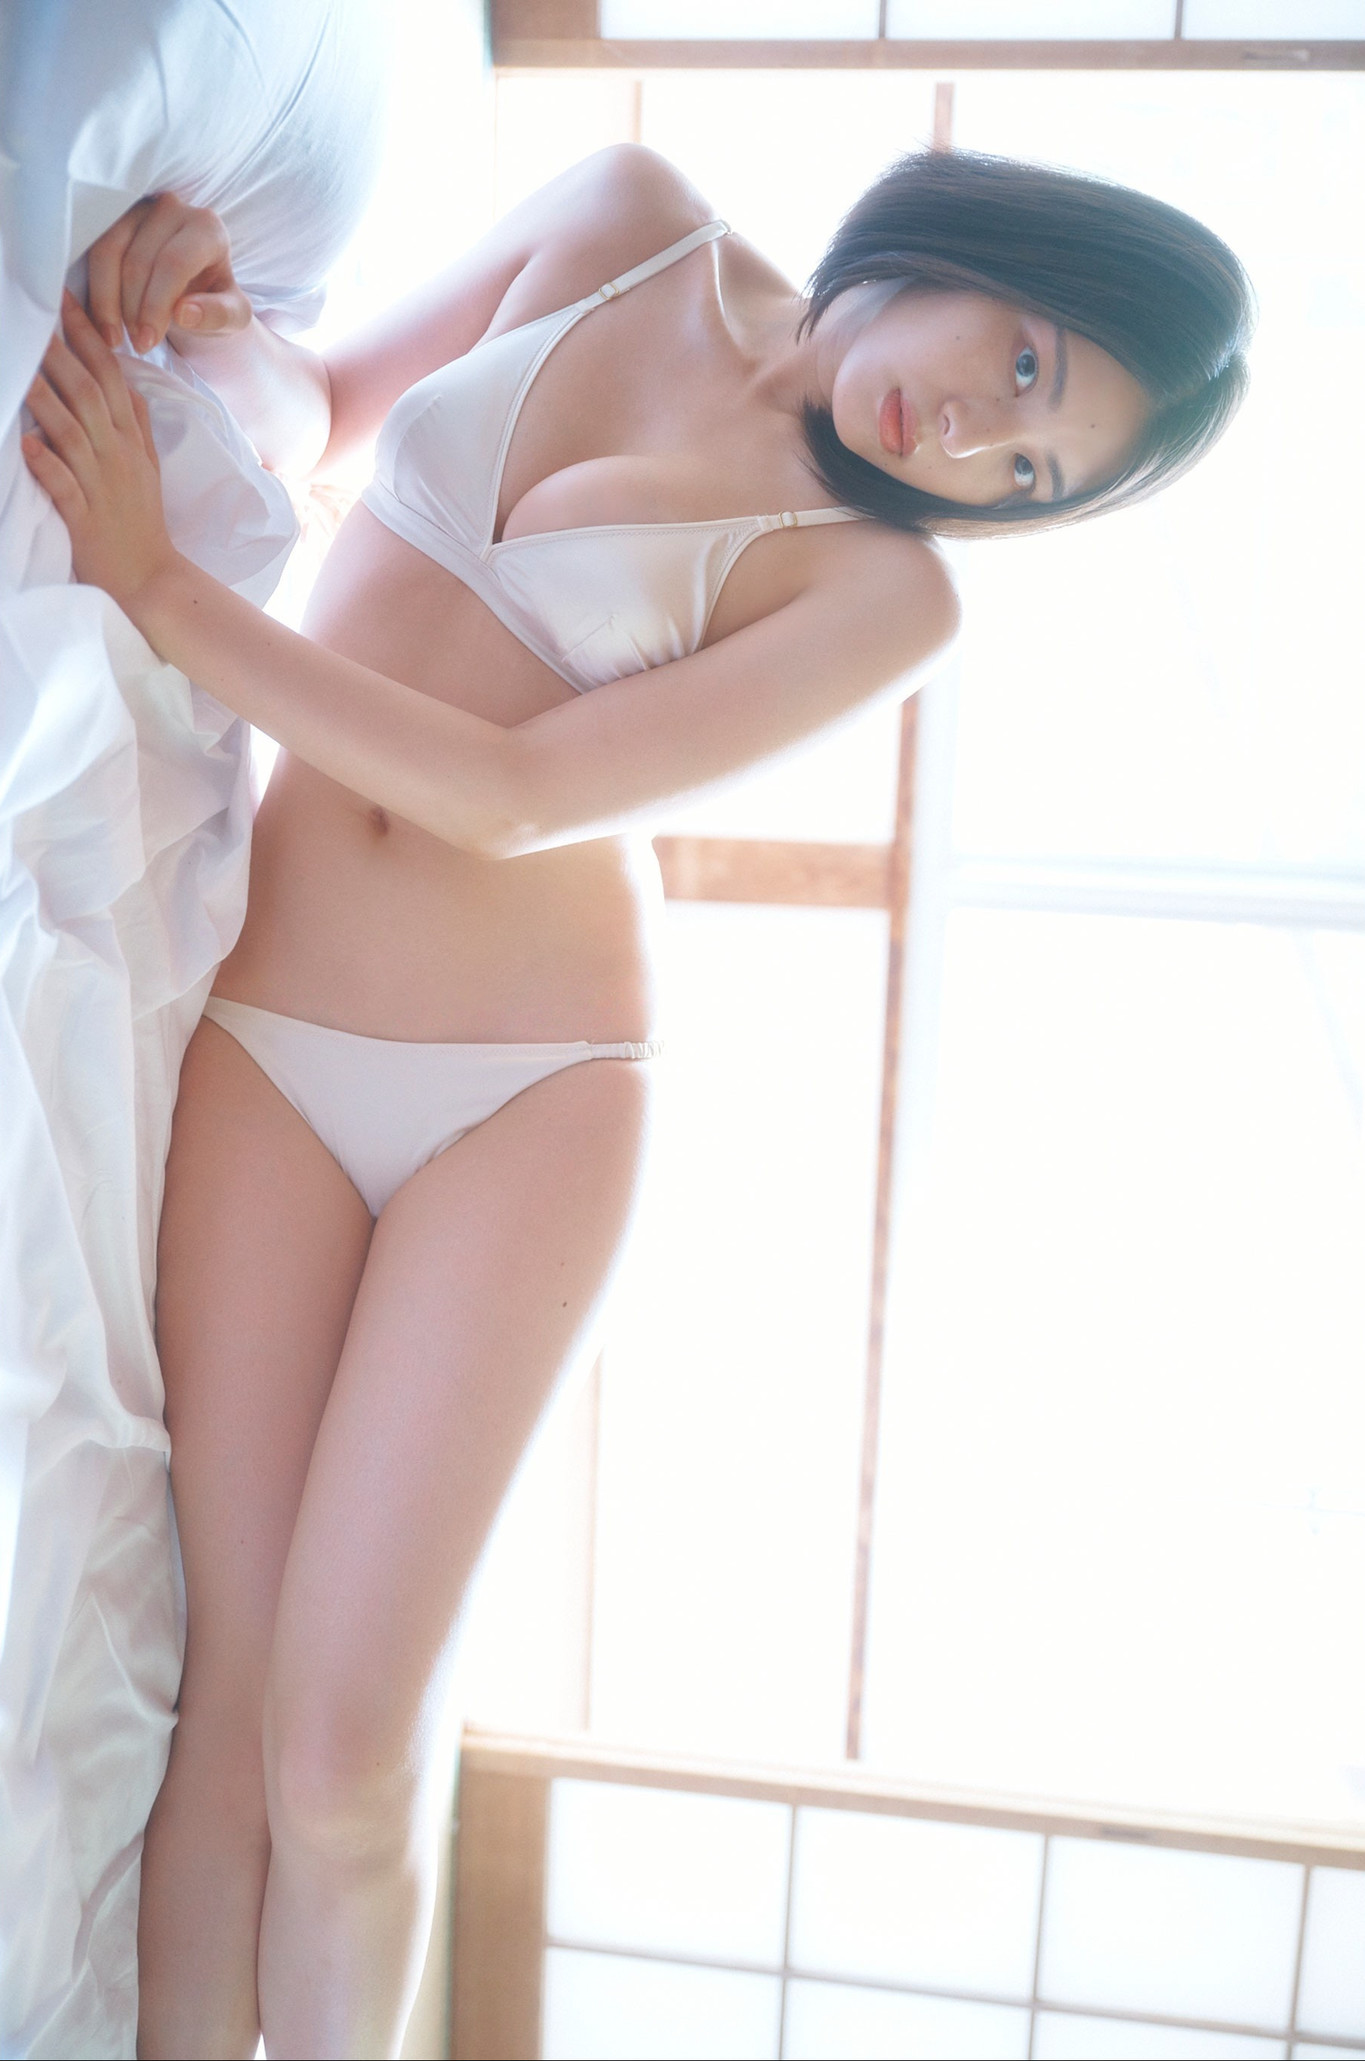 Iori Sagara 相楽伊織, SPA!デジタル写真集 「魅惑の曲線美」 Set.02